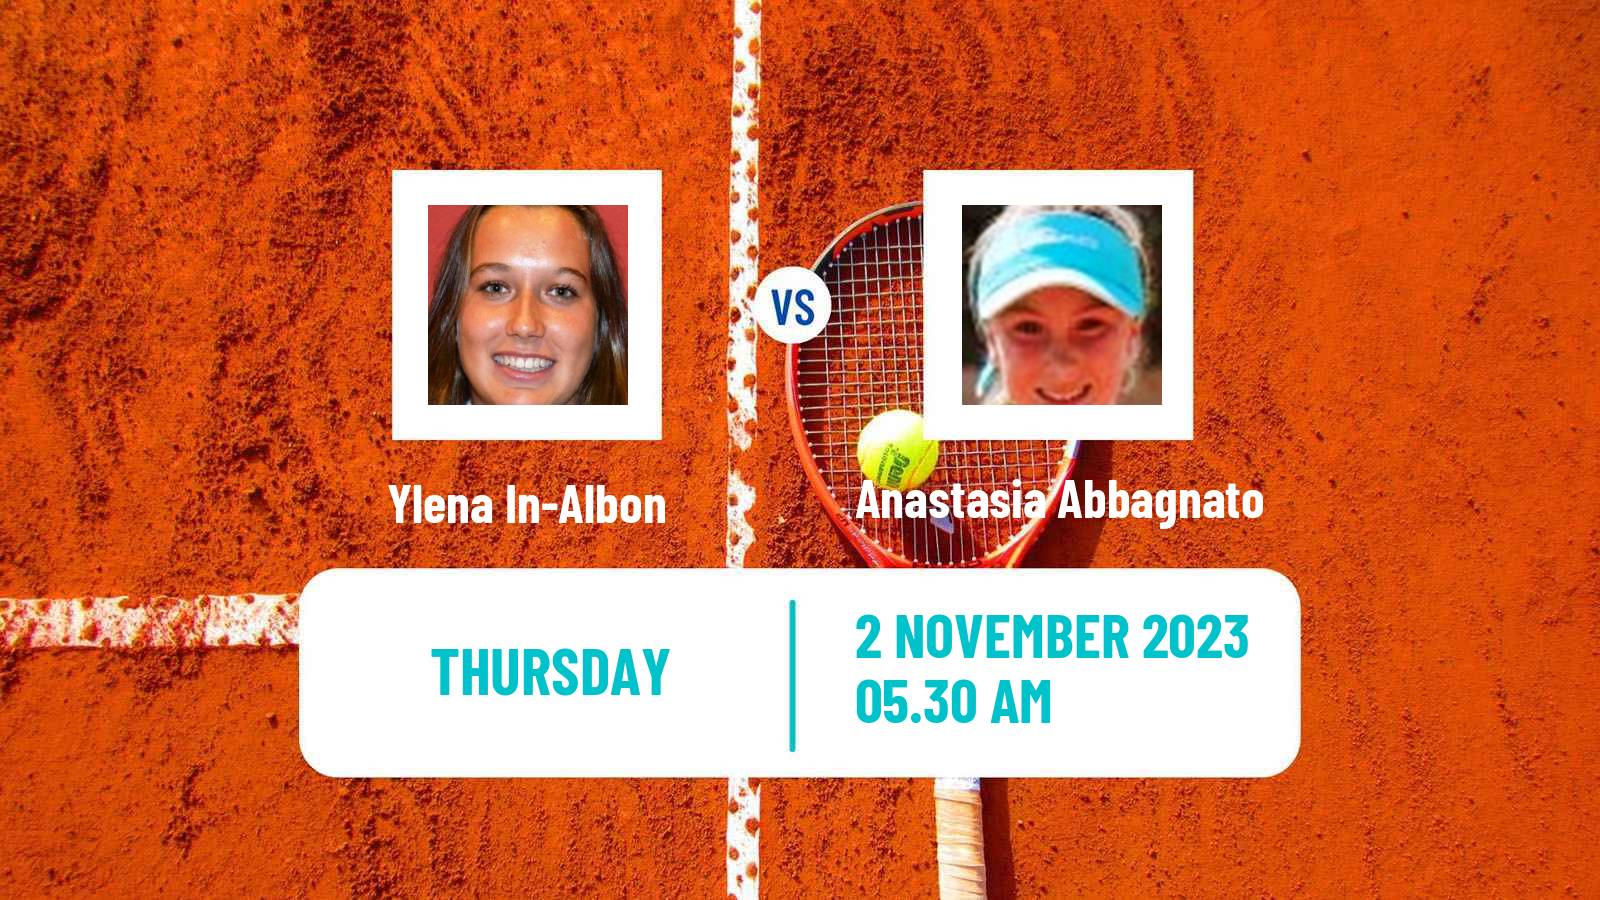 Tennis ITF W25 Solarino Women Ylena In-Albon - Anastasia Abbagnato